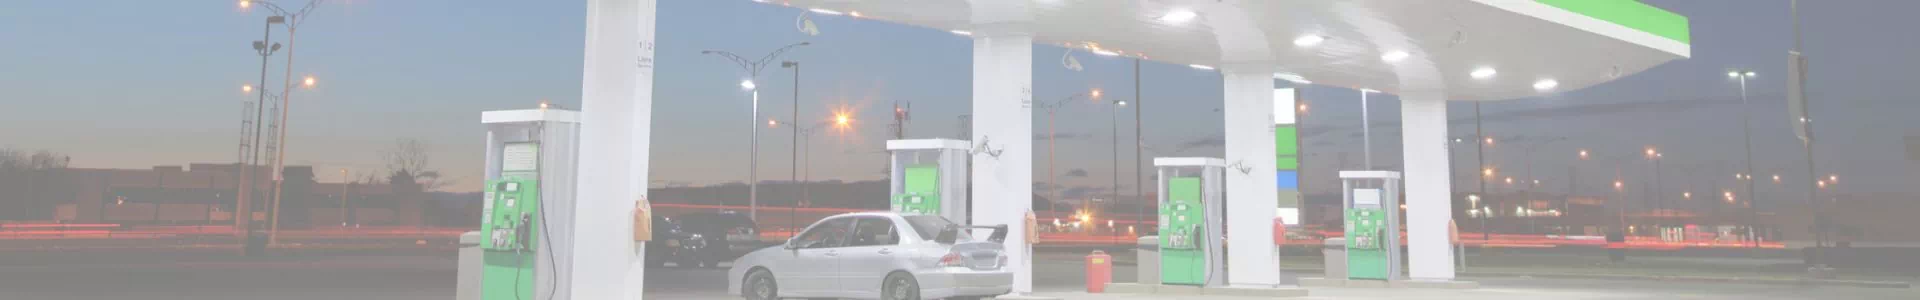 samochód na stacji paliw